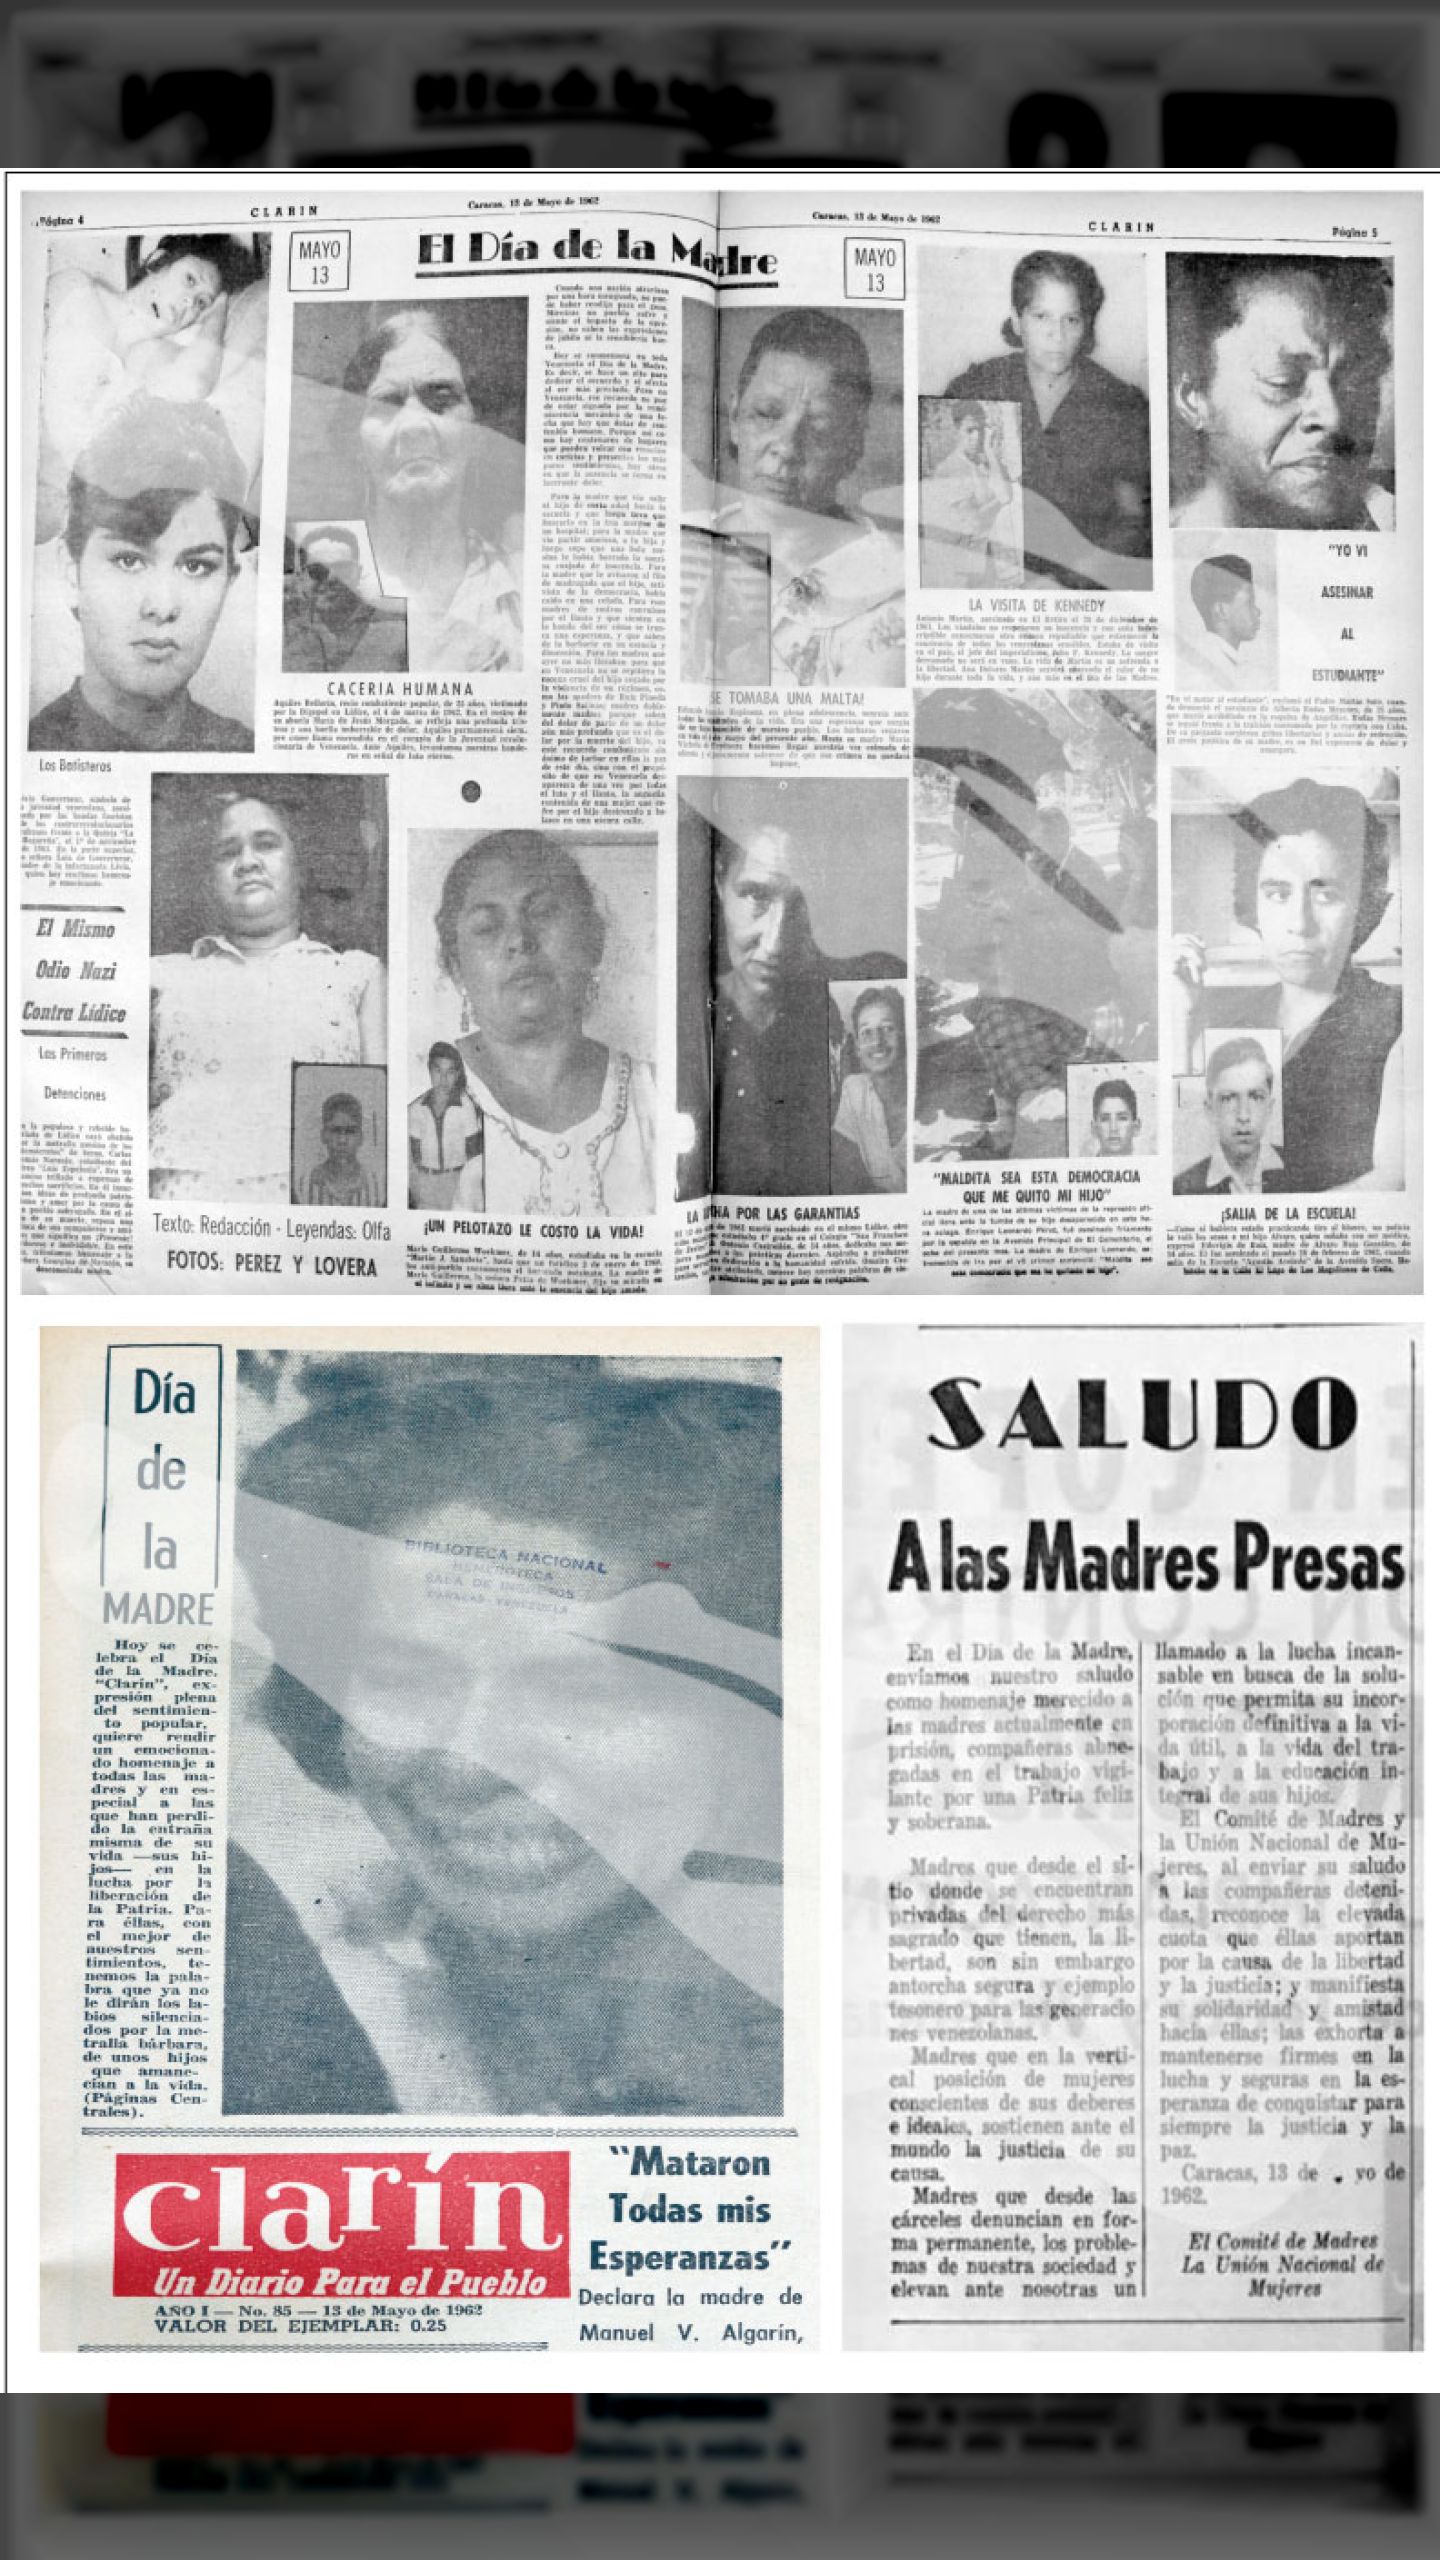 EL DIA DE LAS MADRES (Clarín, 12 de mayo 1962 + Víctimas de la Democracia Representativa en Venezuela, autor: Raúl Zurita Daza)